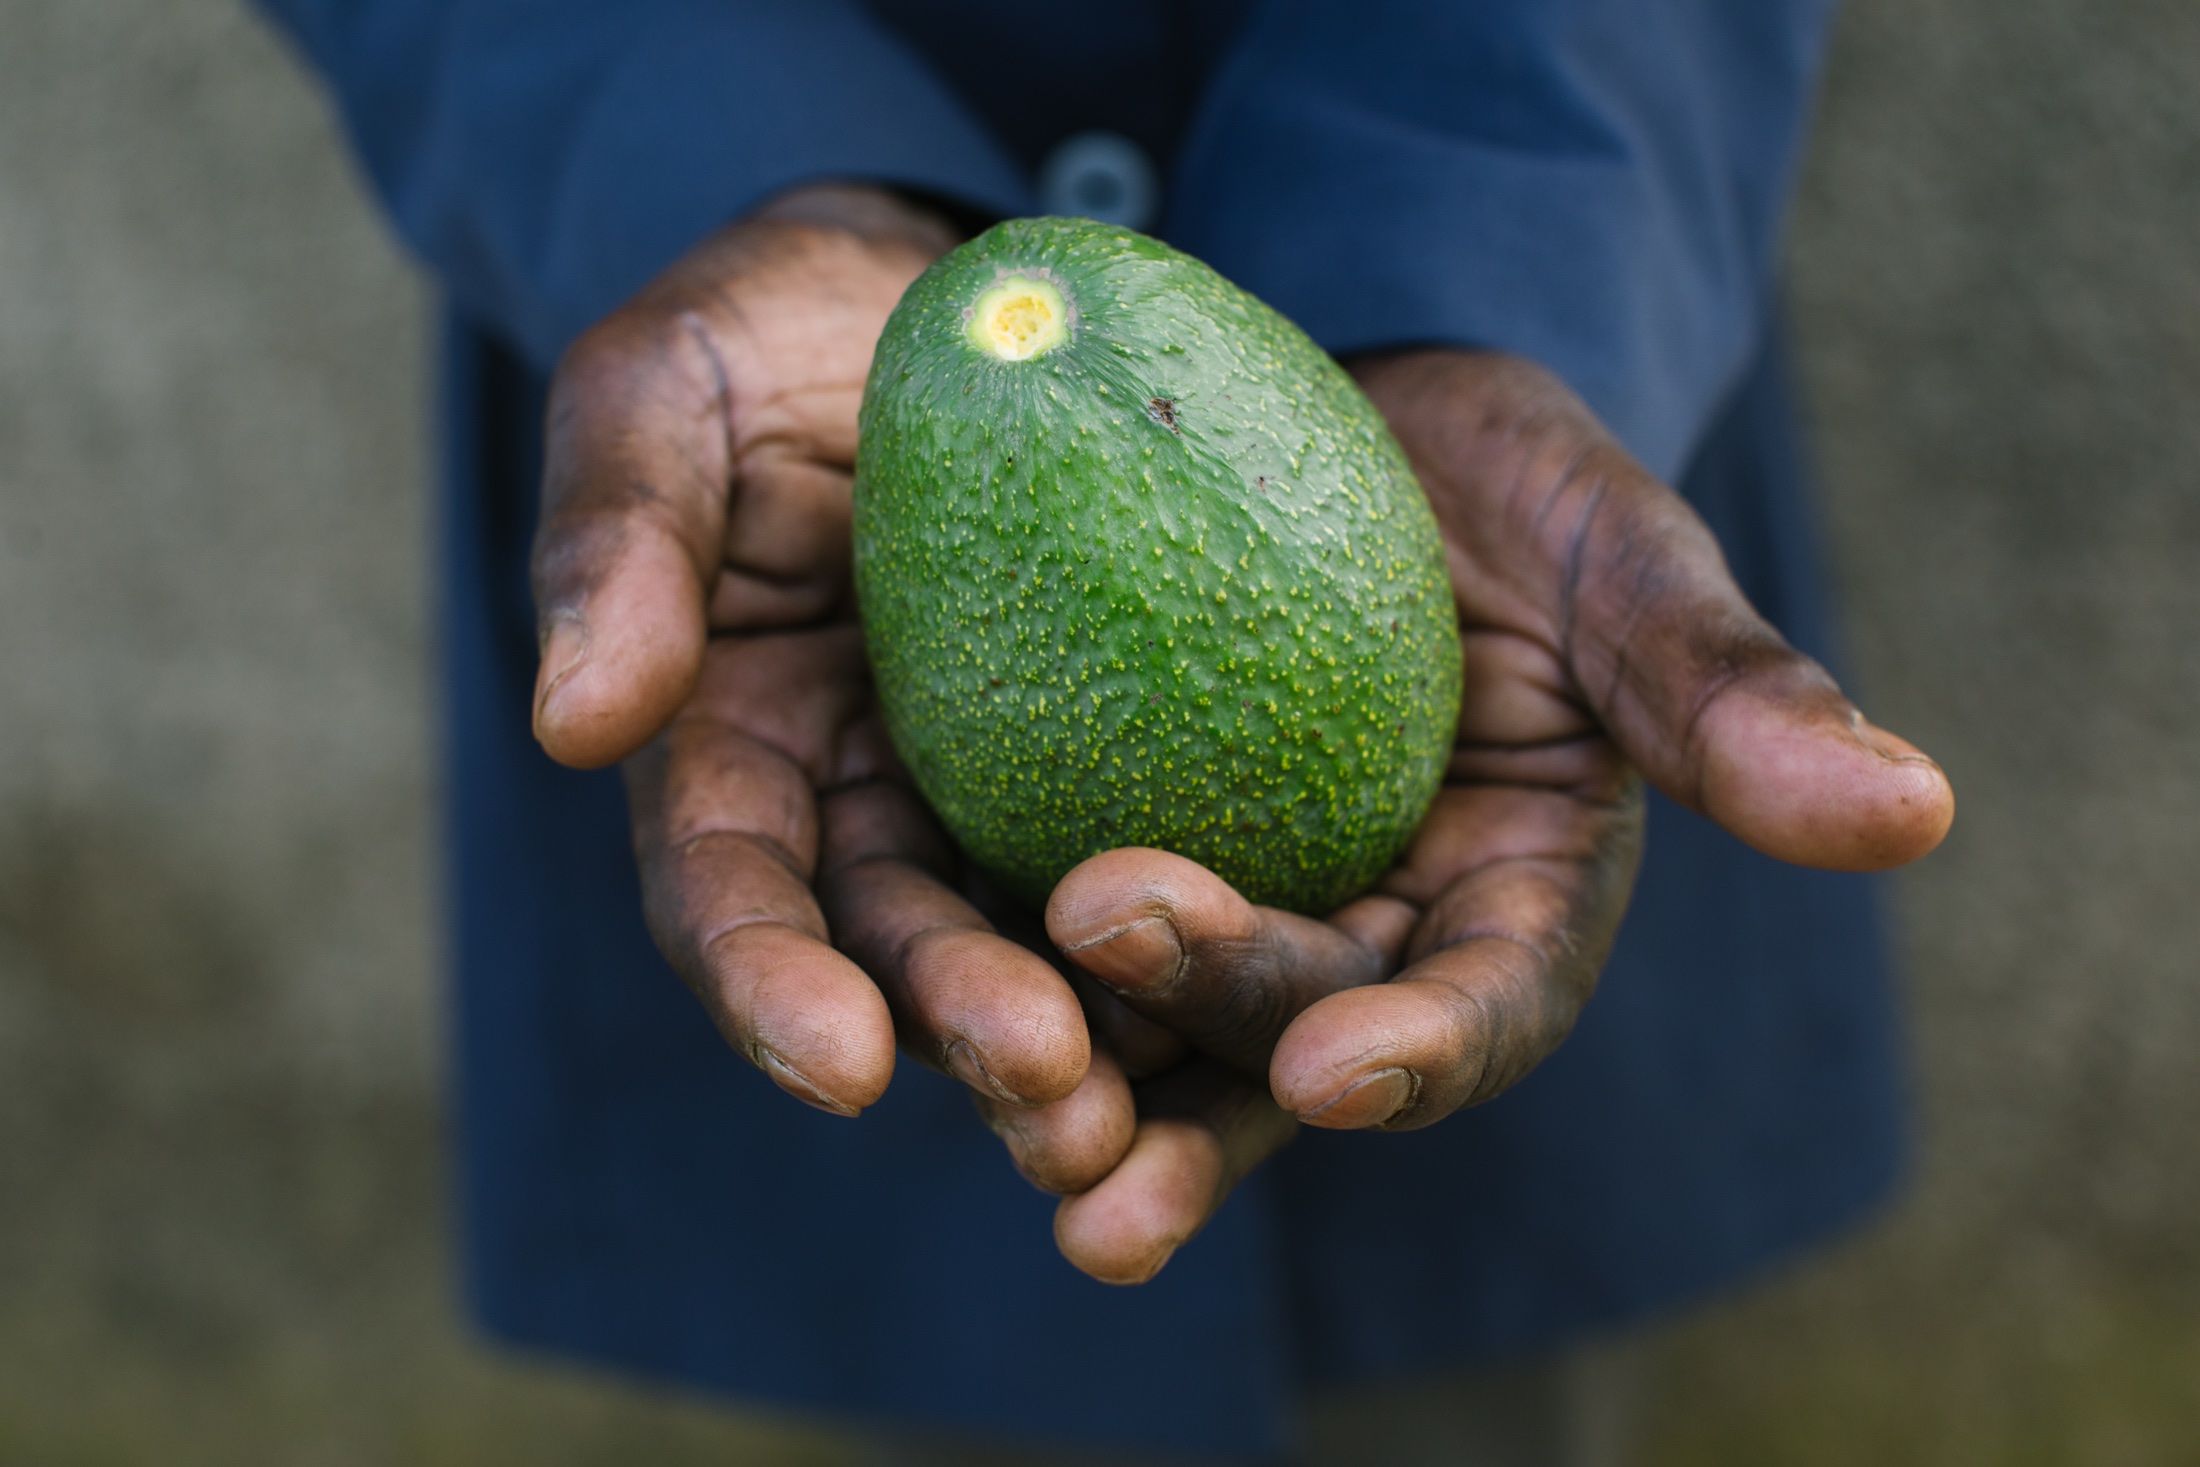 Farmer holding an avocado 